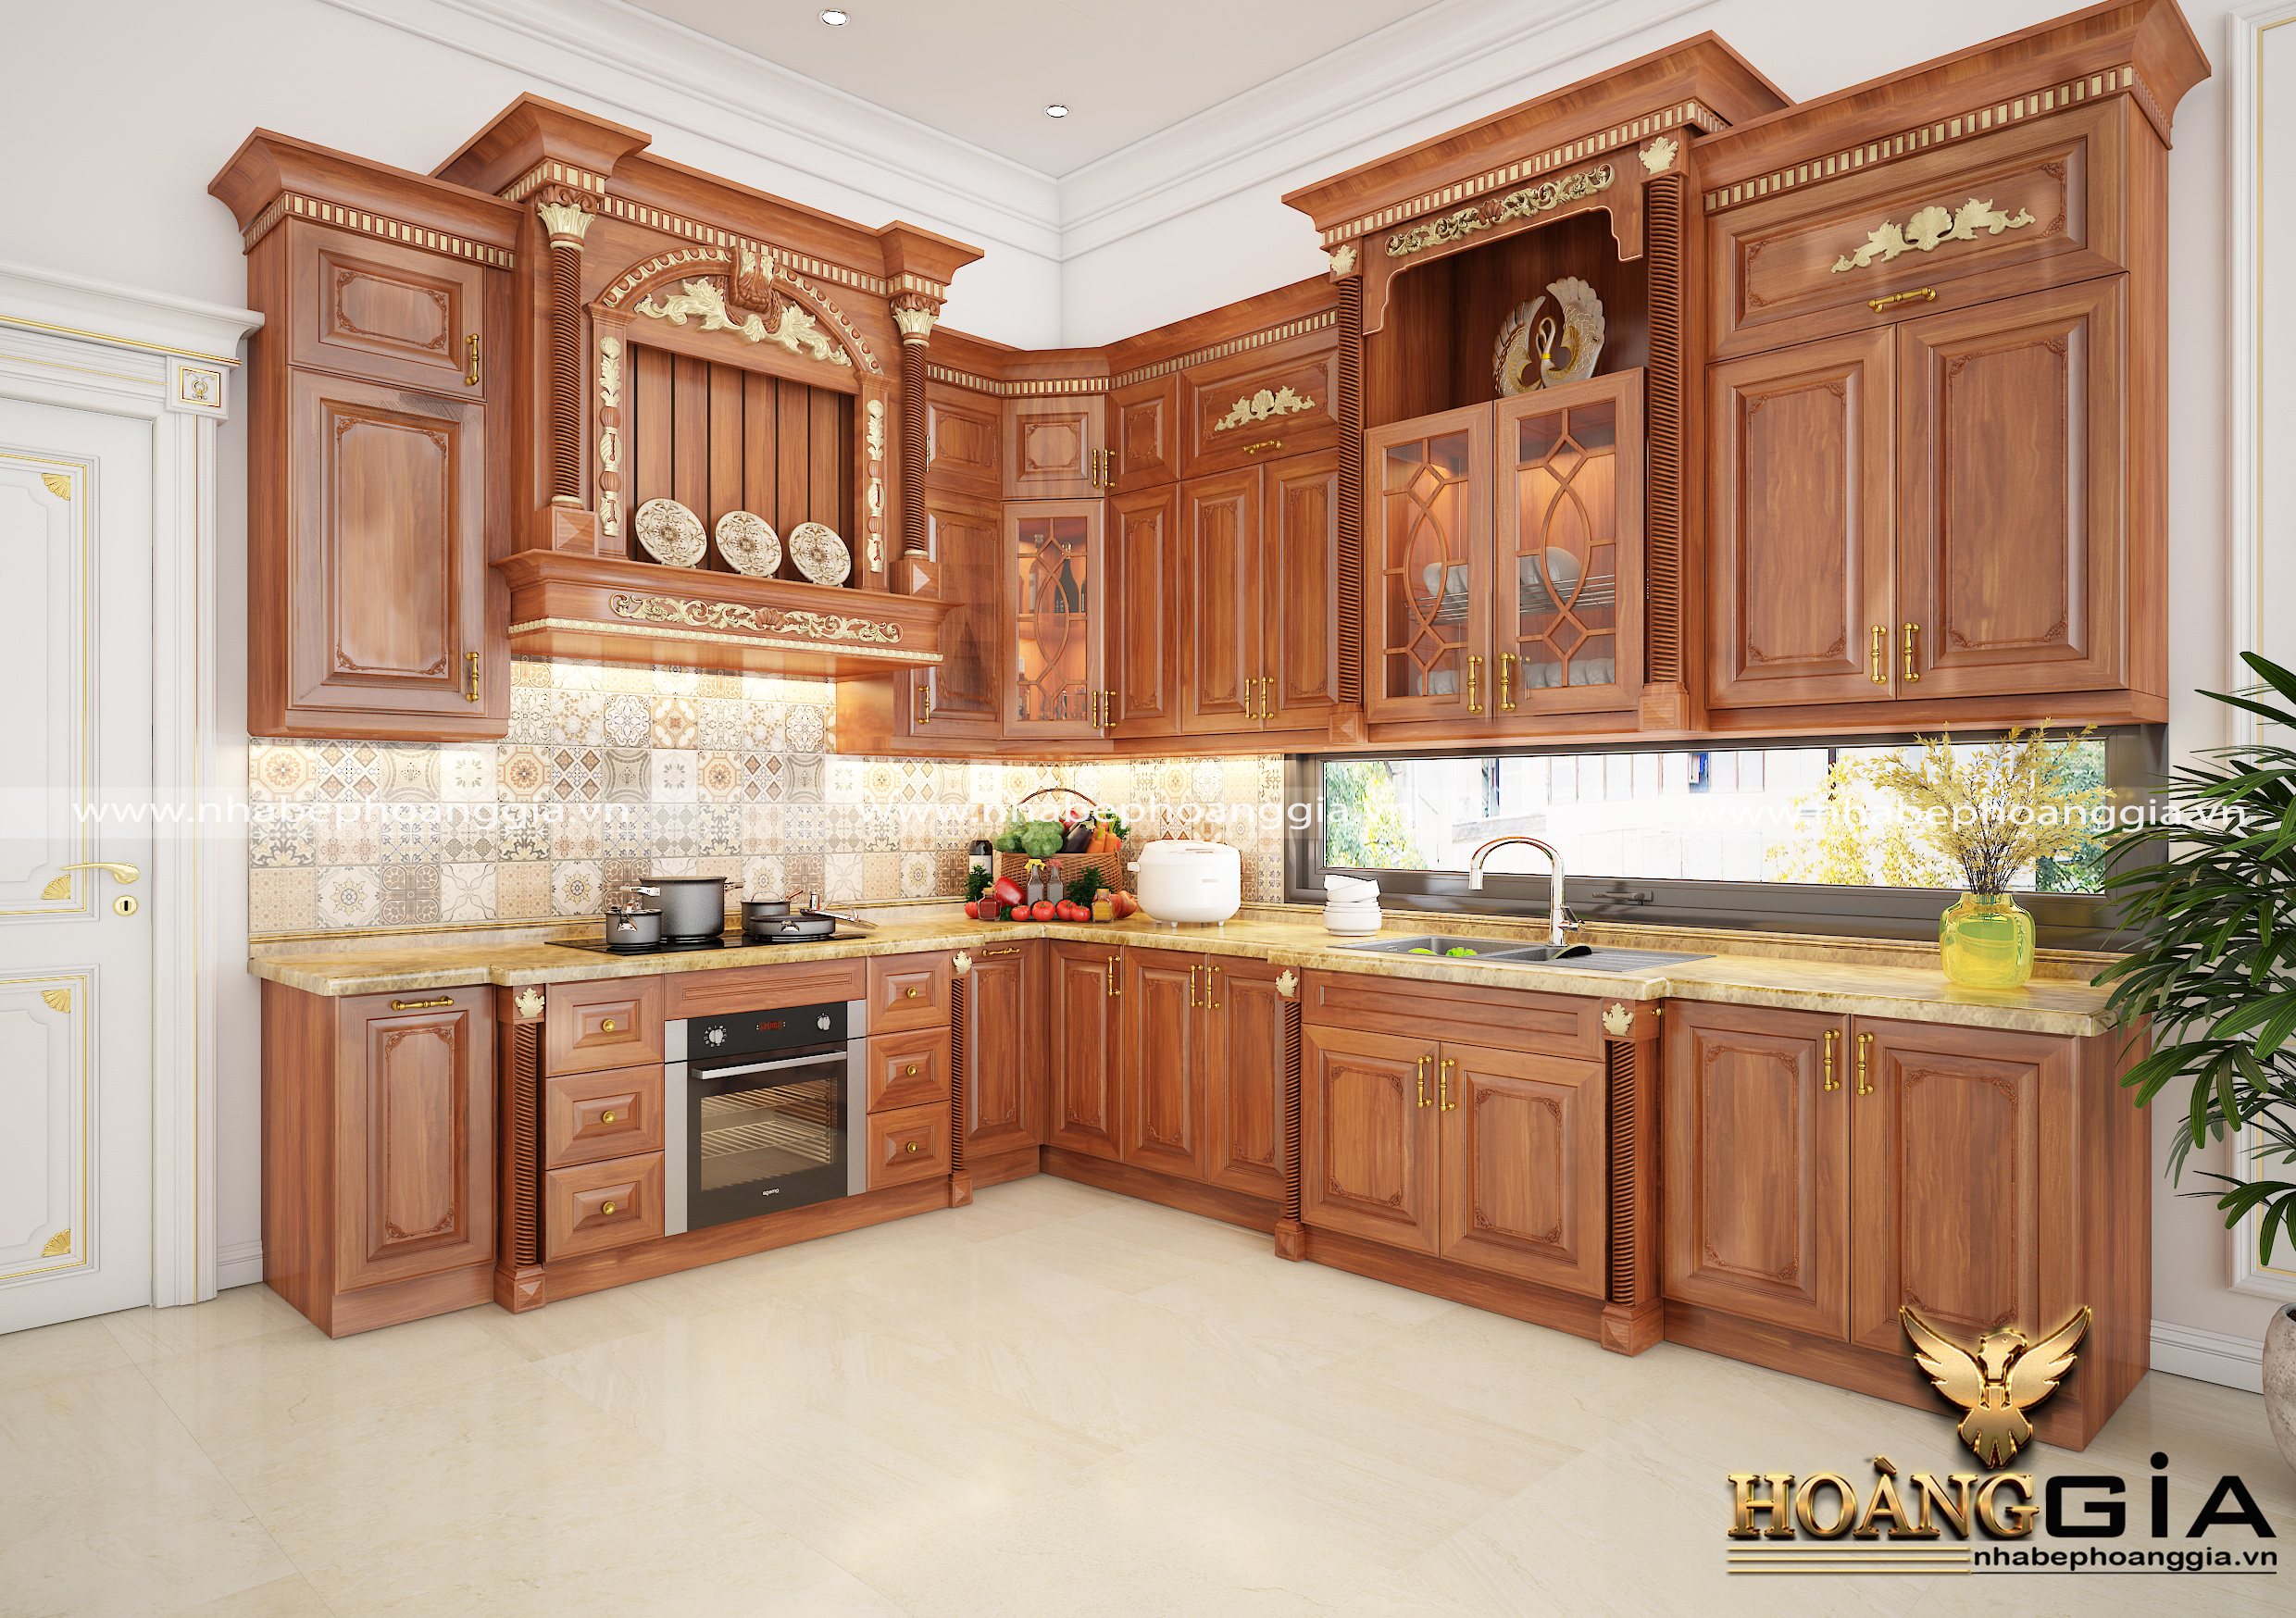 Thiết kế tủ bếp tân cổ điển dát vàng cho biệt thự tại Thanh Hóa